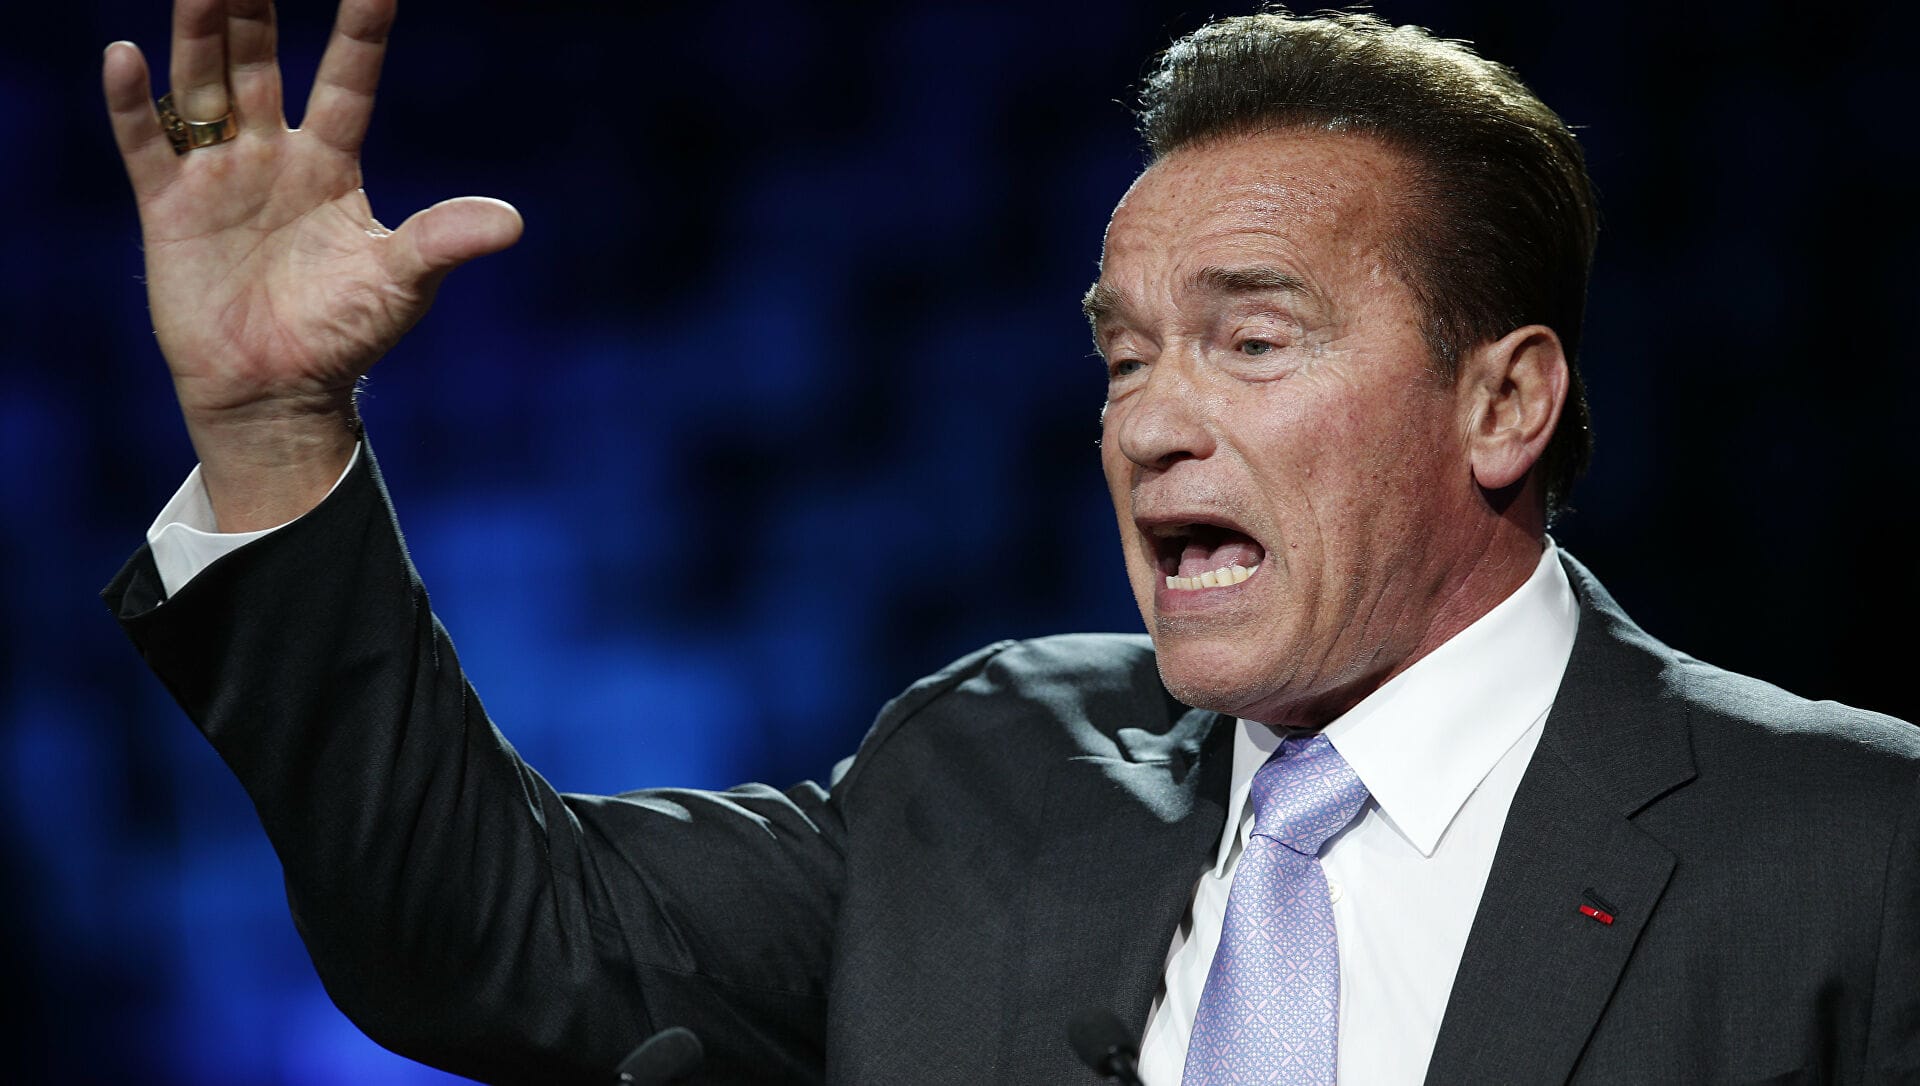 Arnie gives a speech